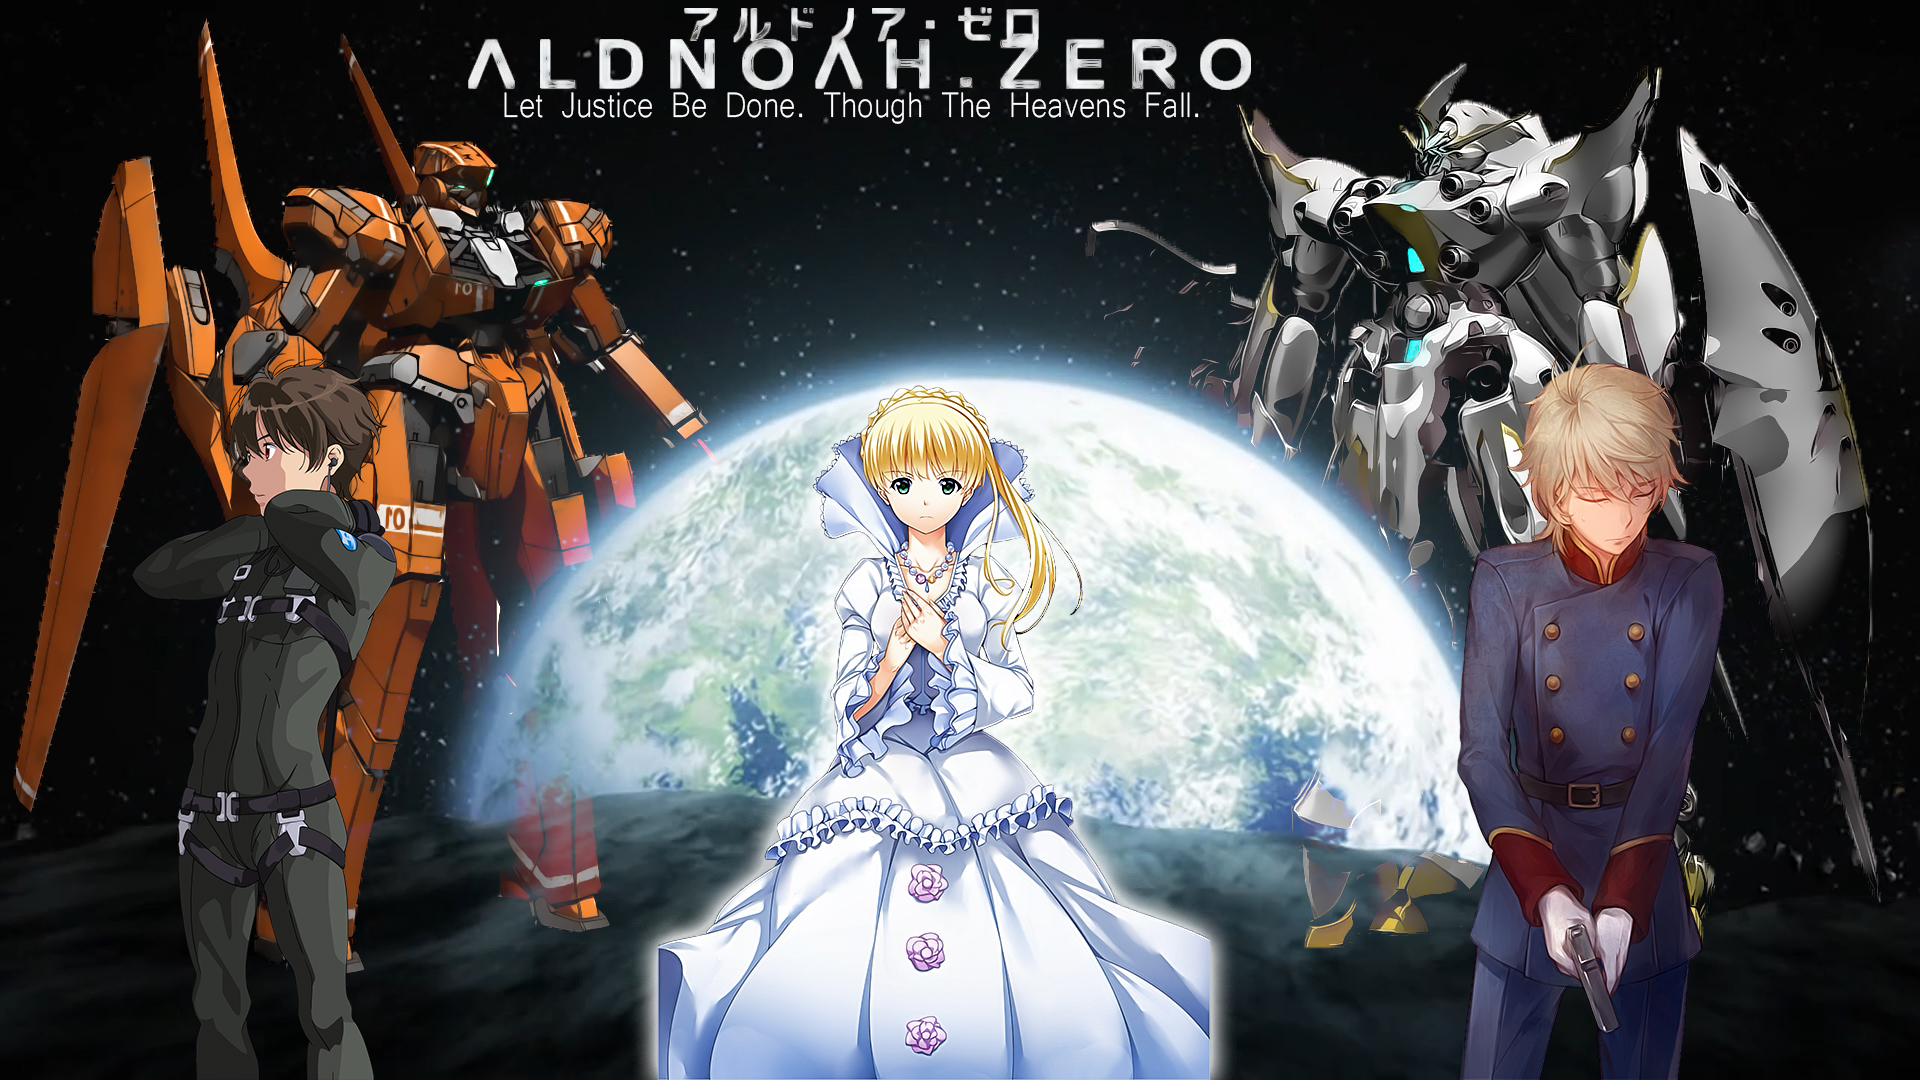 Free download wallpaper Anime, Aldnoah Zero, Inaho Kaizuka, Asseylum Vers Allusia, Slaine Troyard on your PC desktop